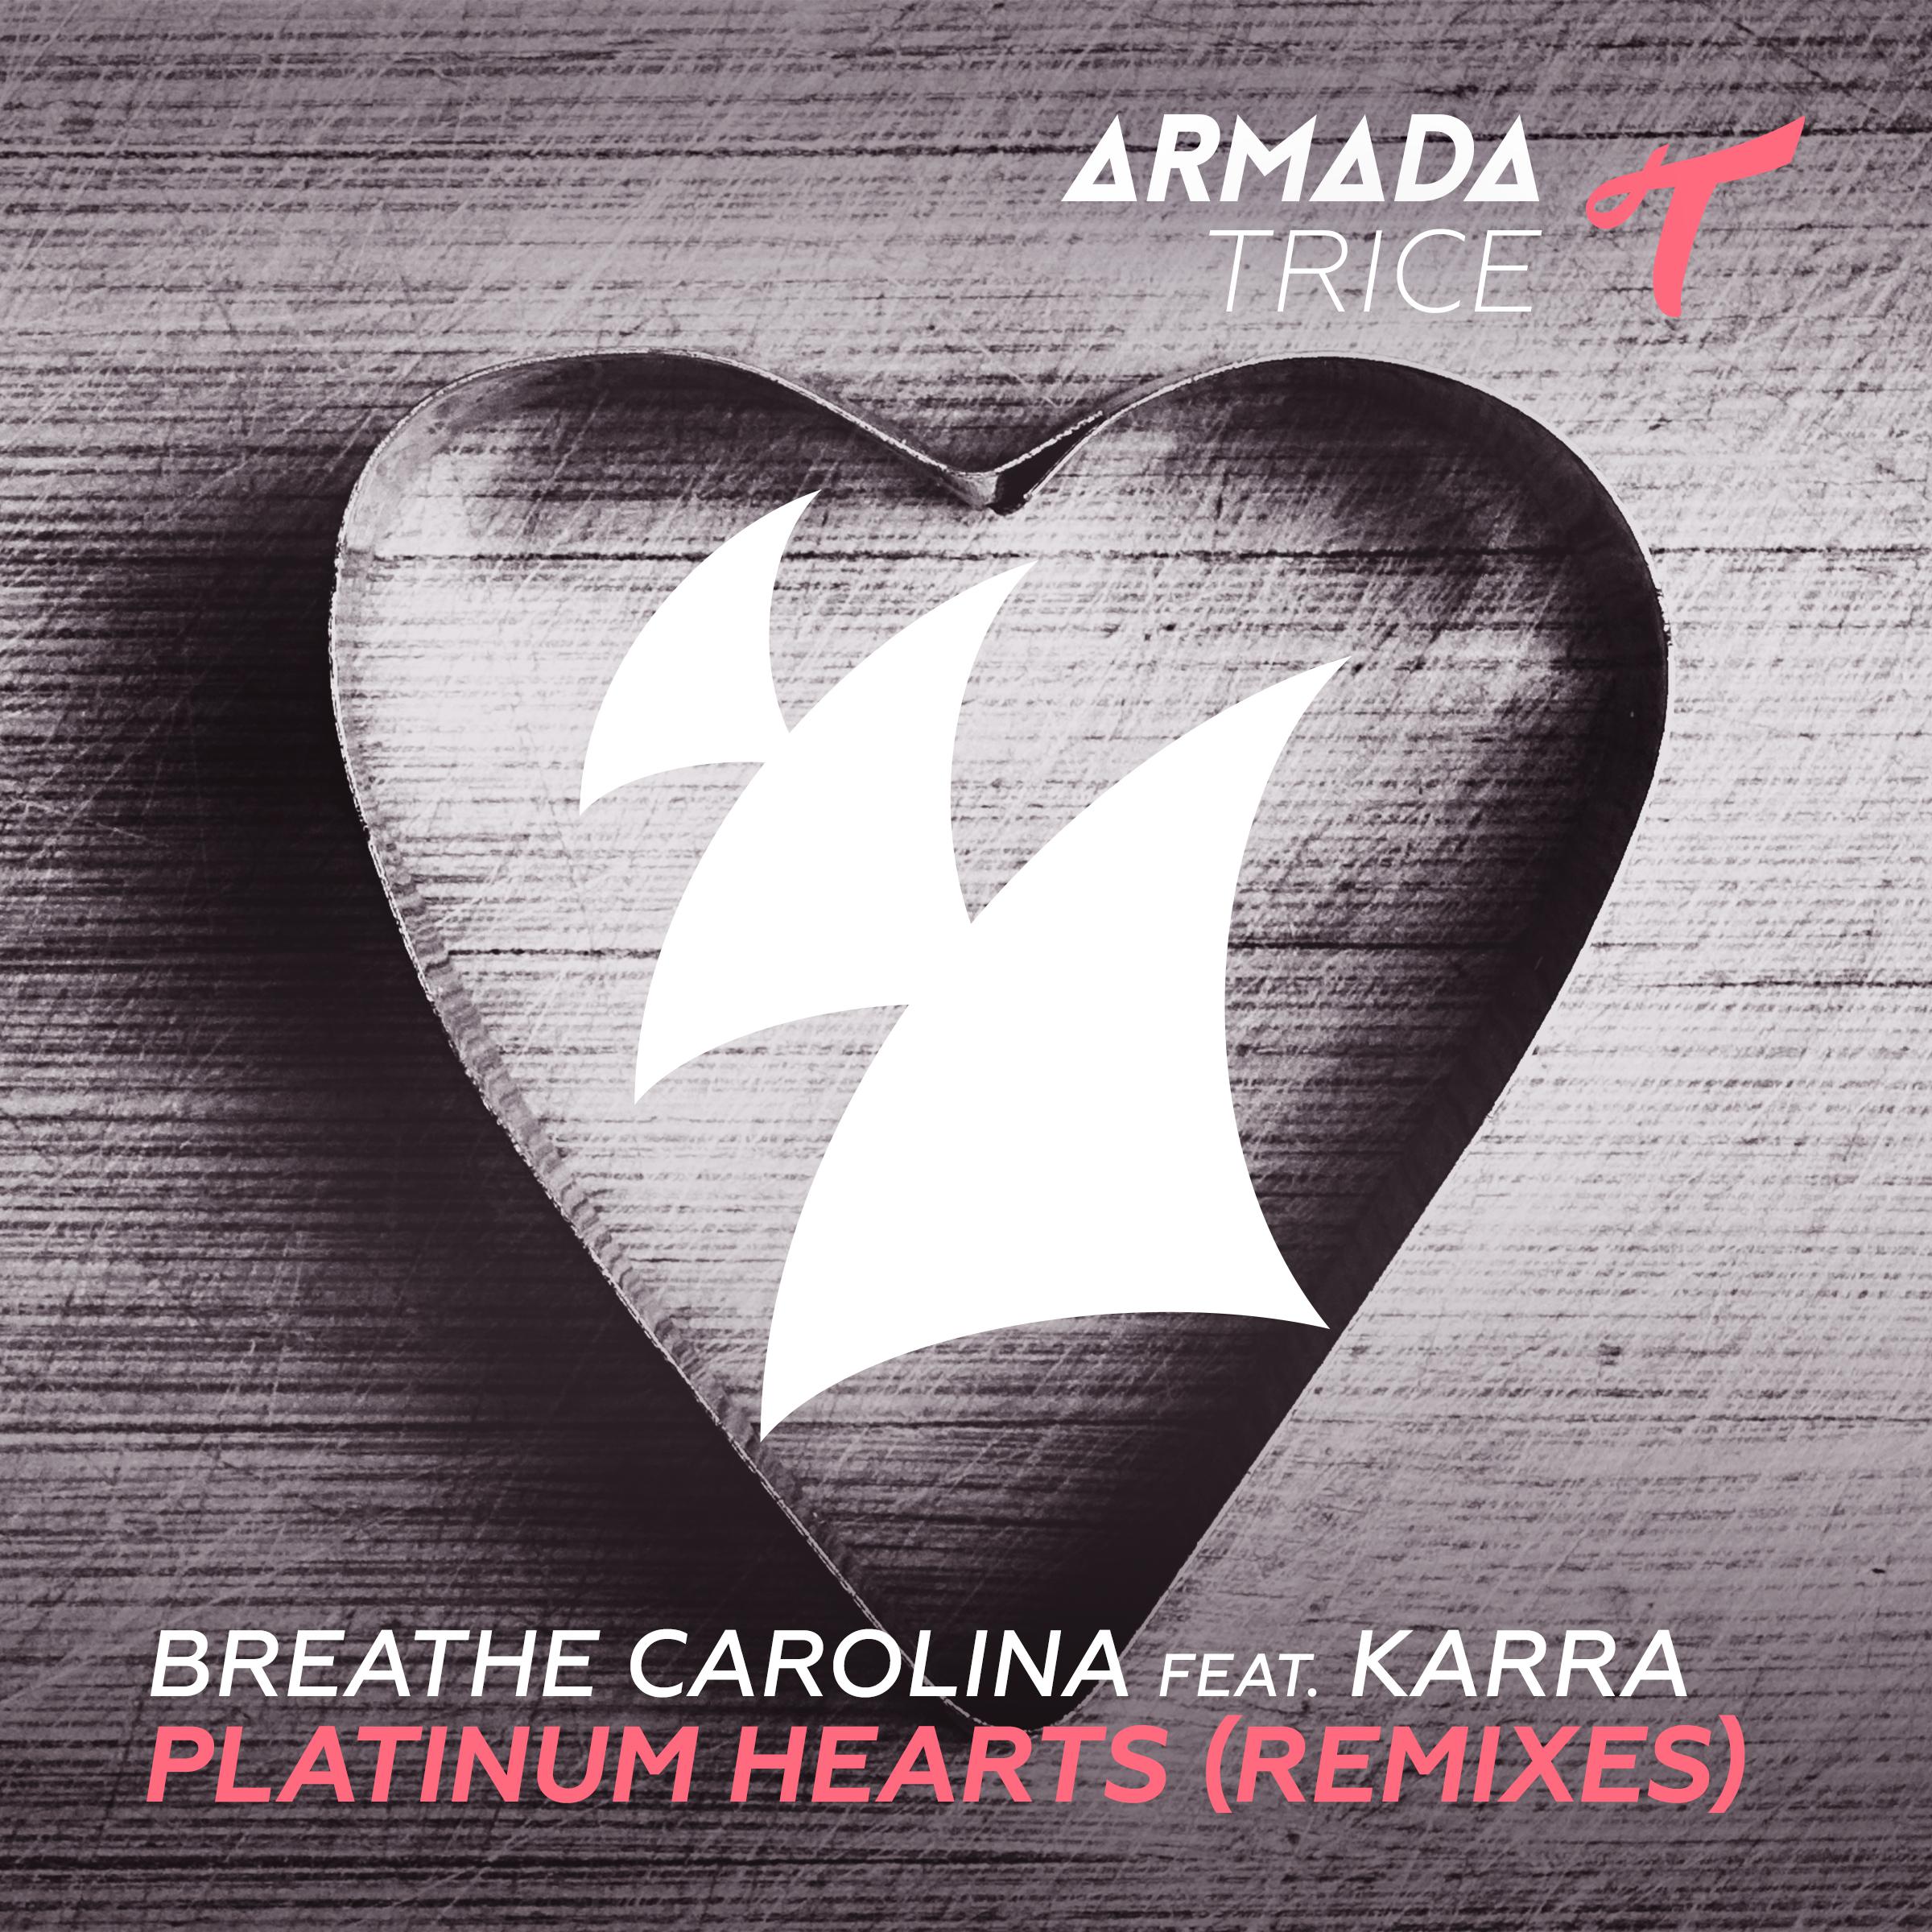 Platinum Hearts (Remixes)